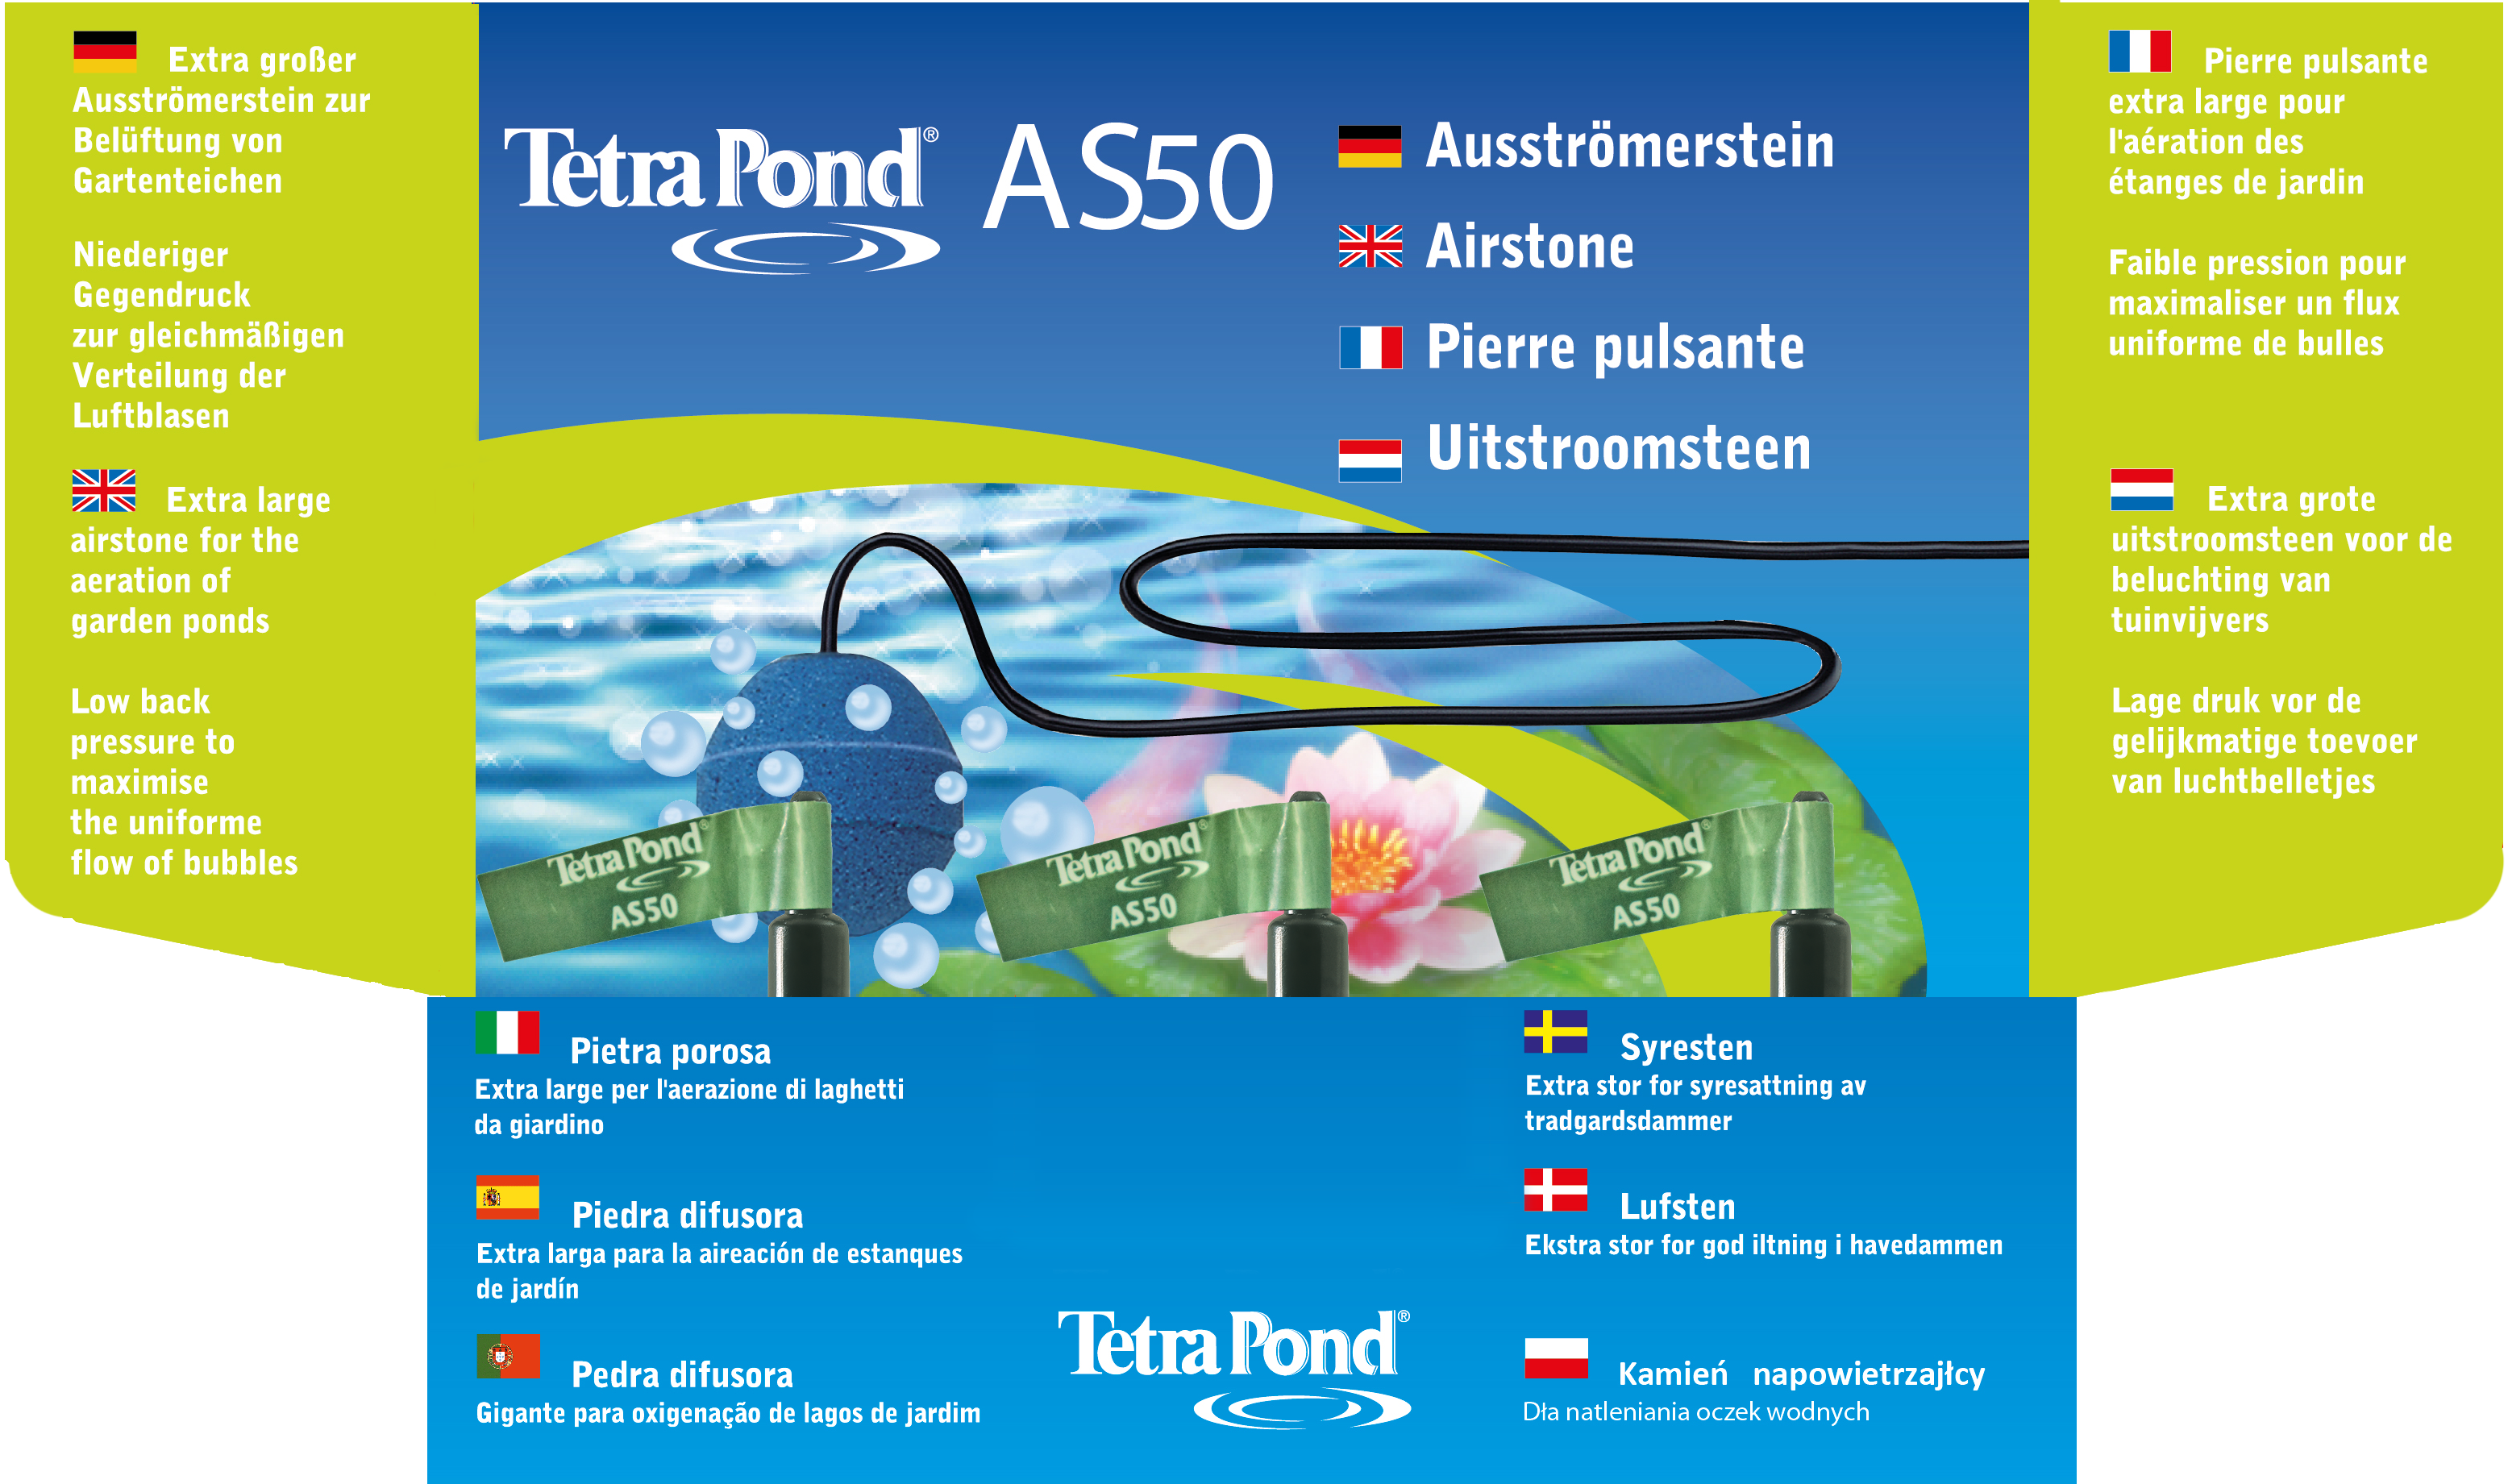 Tetra Pond Ausströmerstein AS 50